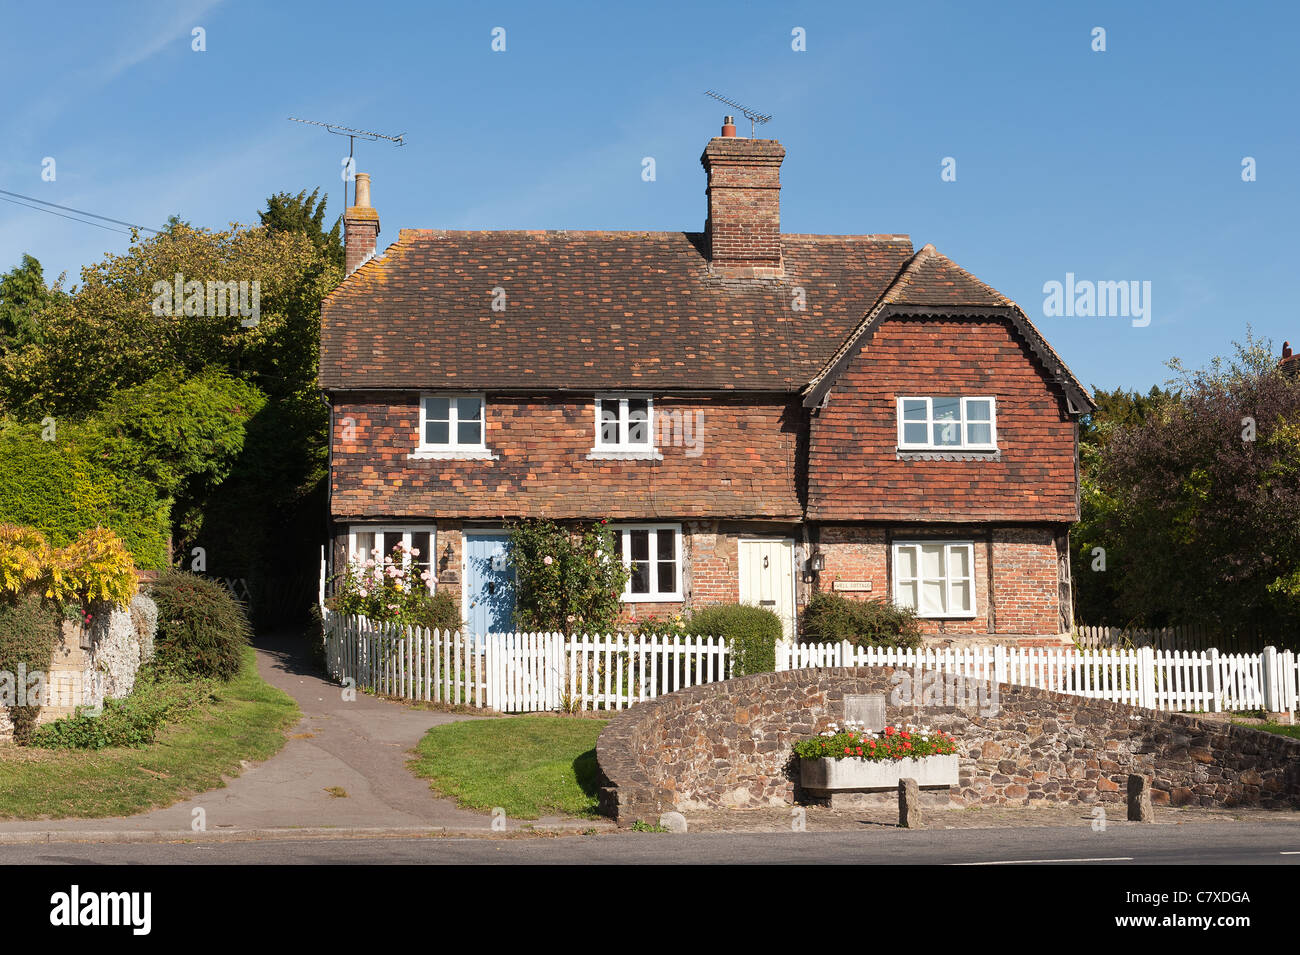 Le village de Sevenoaks, Sevenoaks, Kent Banque D'Images